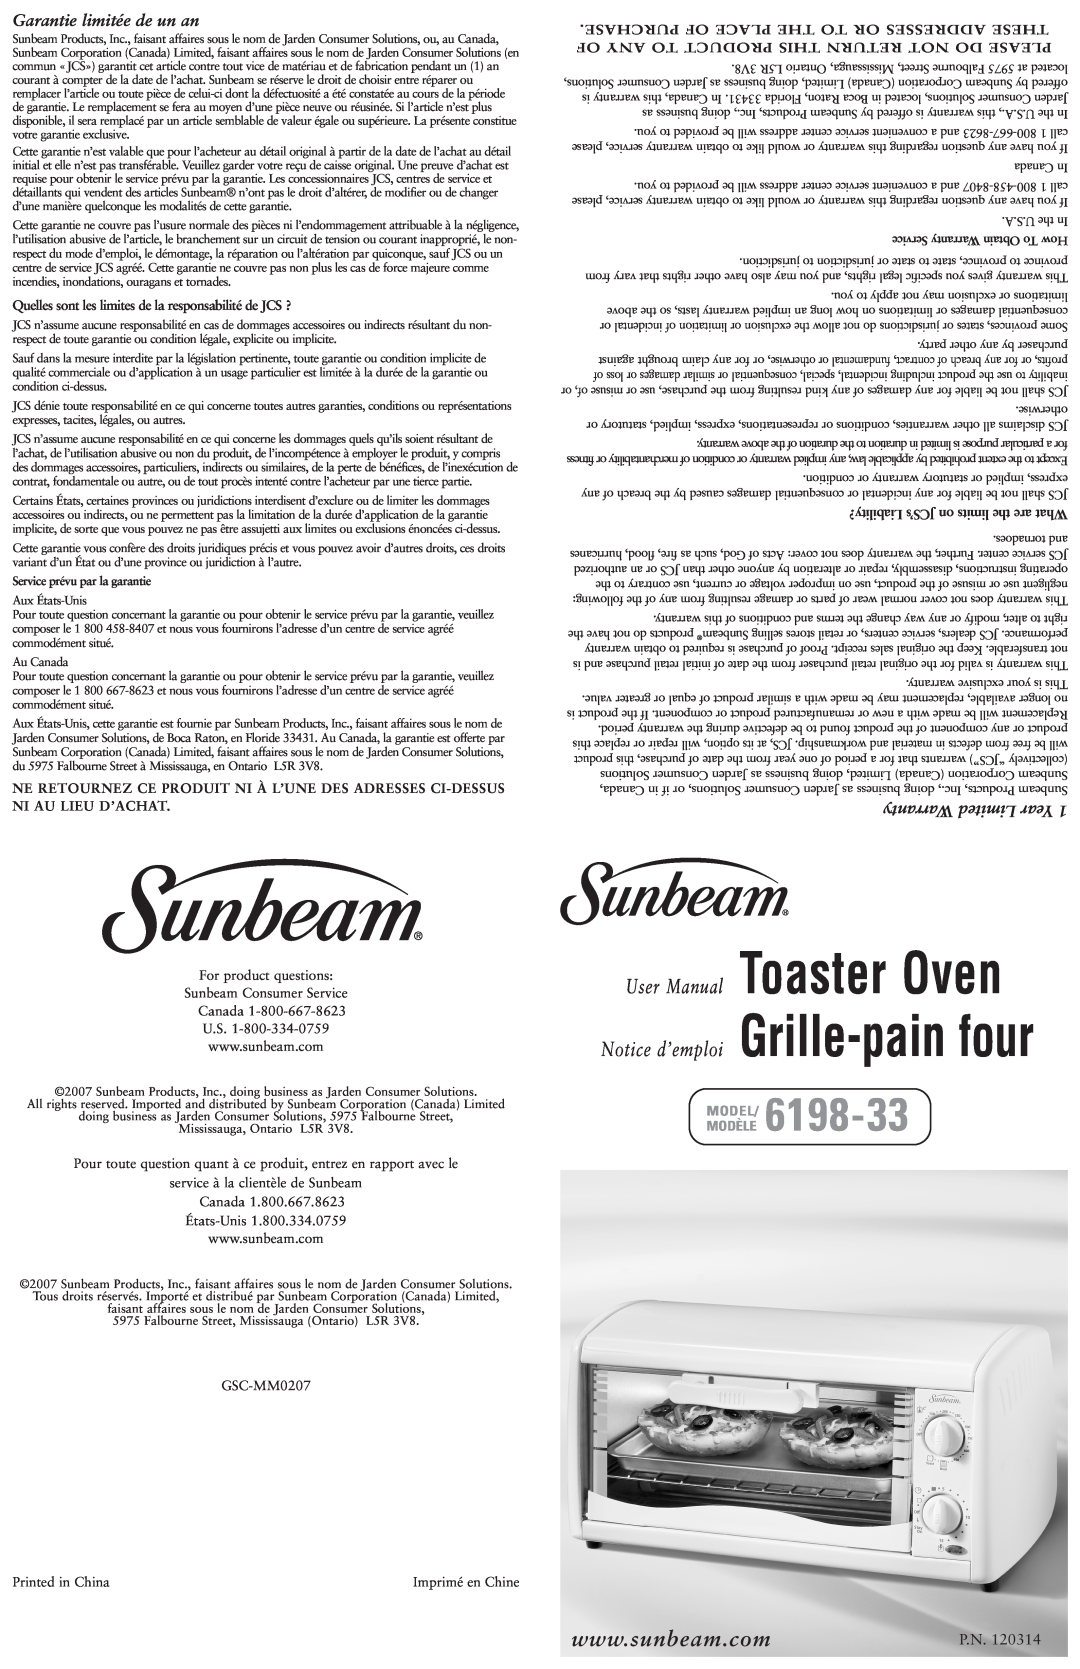 Sunbeam 6198-33 warranty Garantie limitée de un an, Warranty Limited Year, P.N, Modèle Model 